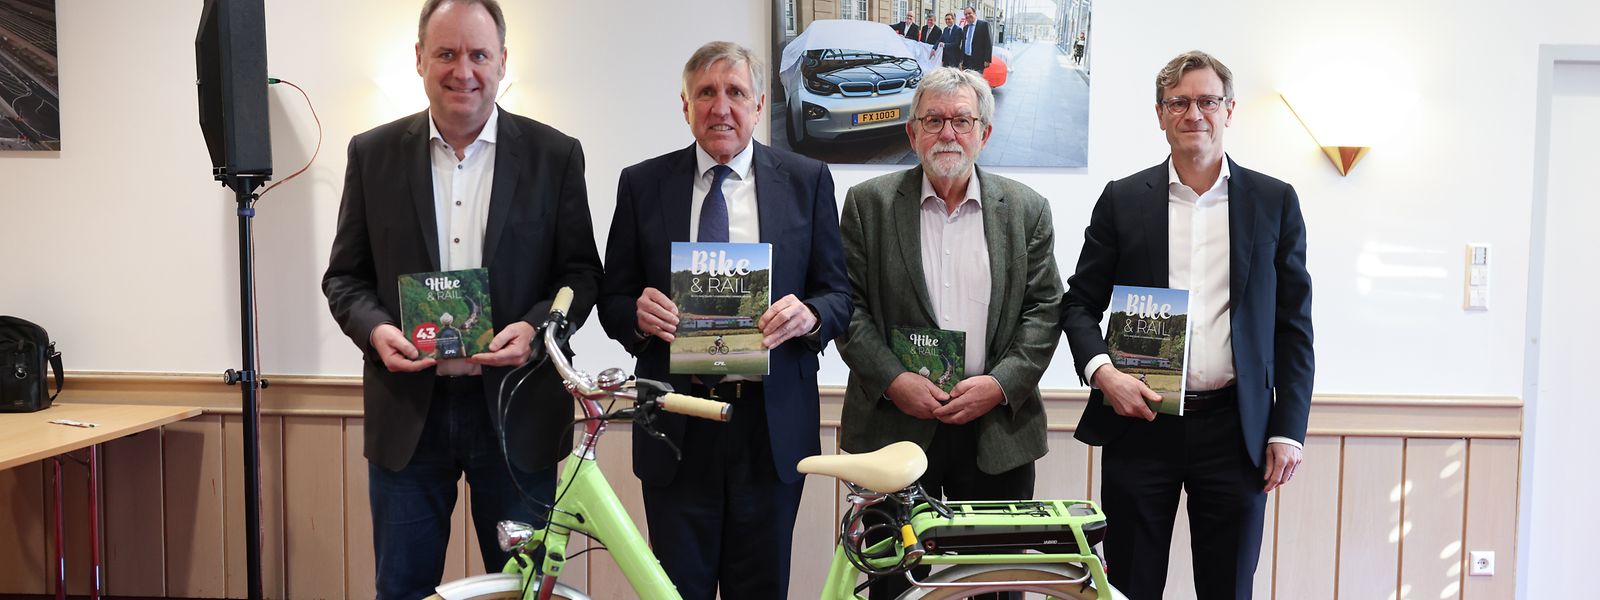 Die CFL präsentierte am Donnerstag die Neuauflage des Hike & Rail sowie das neue Projekt Bike & Rail.